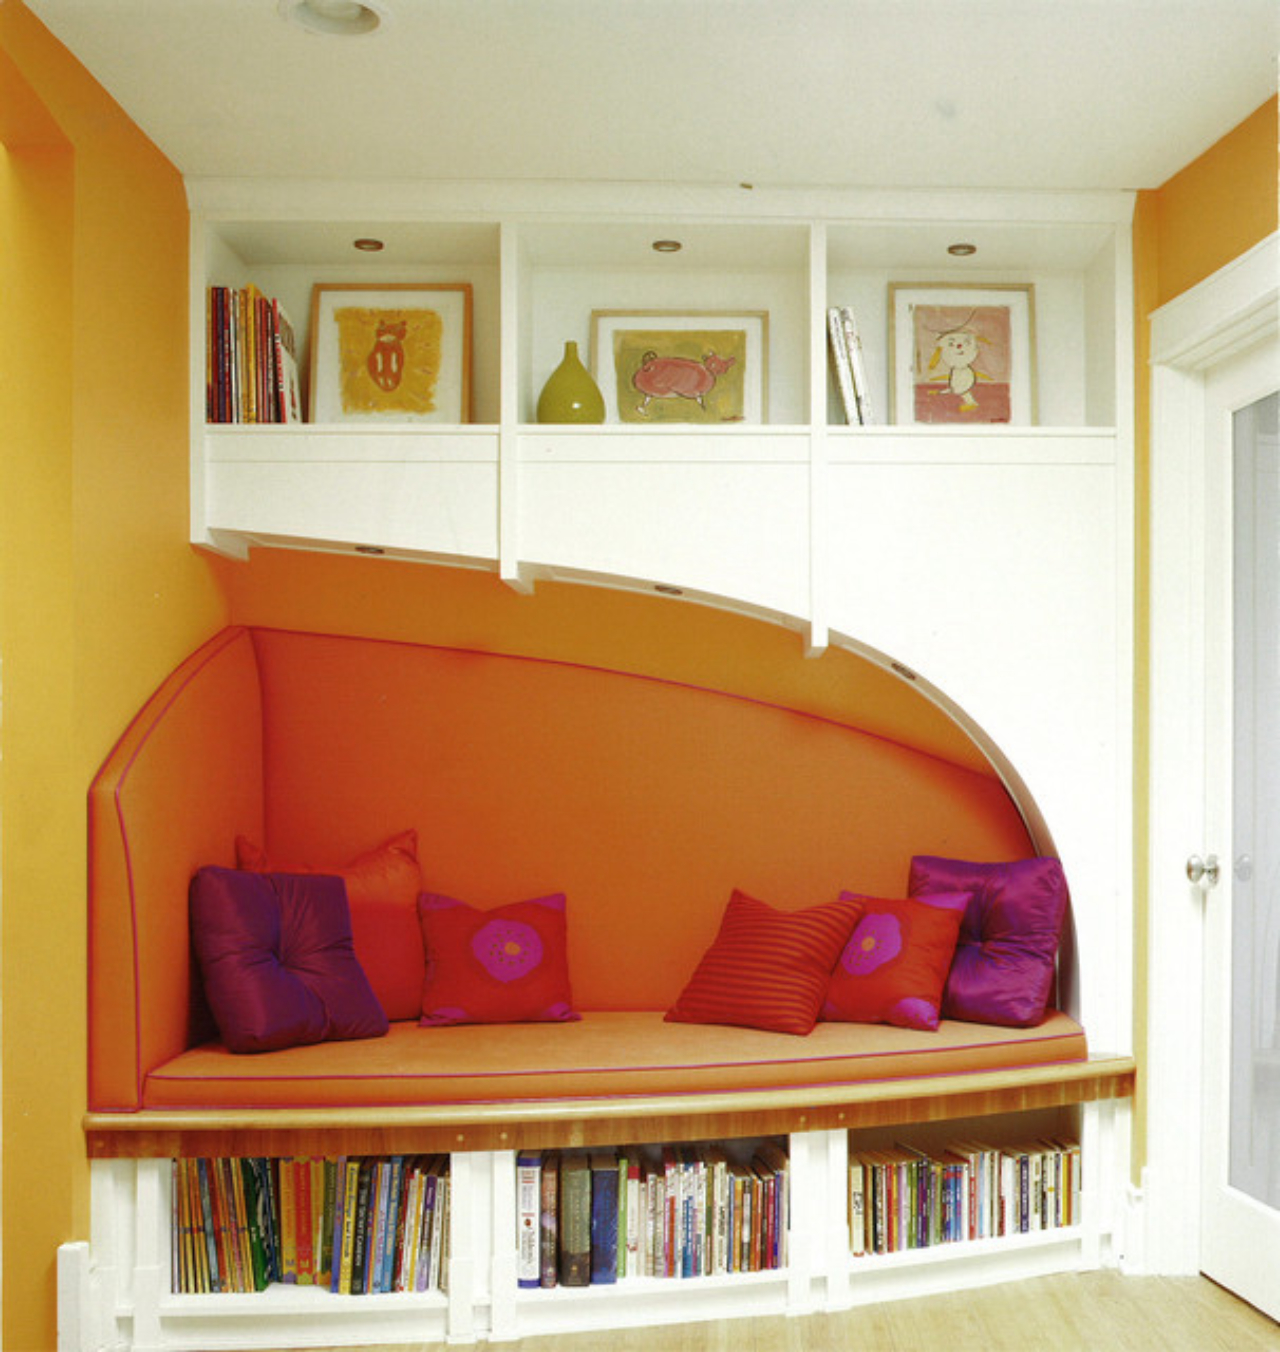 Uma simples parede transformou-se em espaço para leitura nesse projeto, que ganhou cor com as almofadas. Fotos: Morgante Wilson Architects/ Divulgação